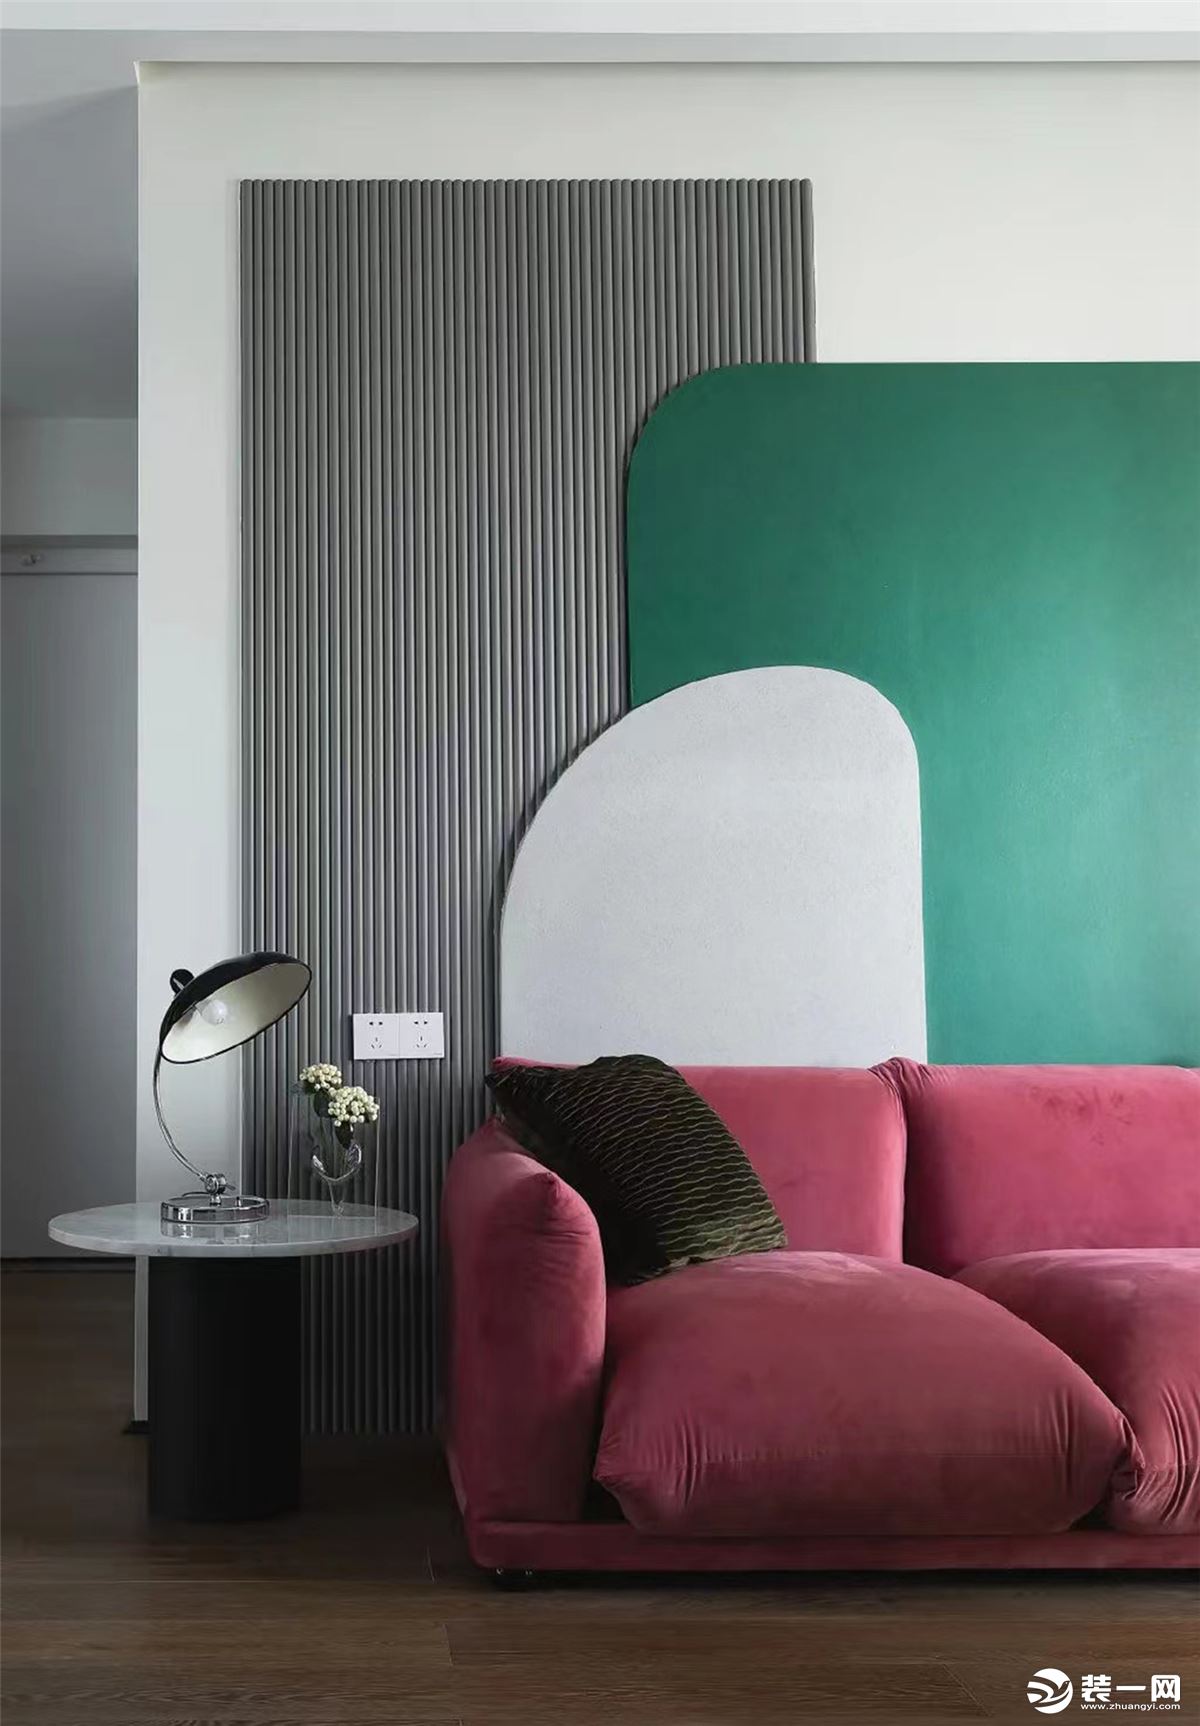 红绿色块带来强烈的视觉冲击感，融合金属家具的质感，热烈与克制并存，体现屋主的个性，赋予空间独特魅力。